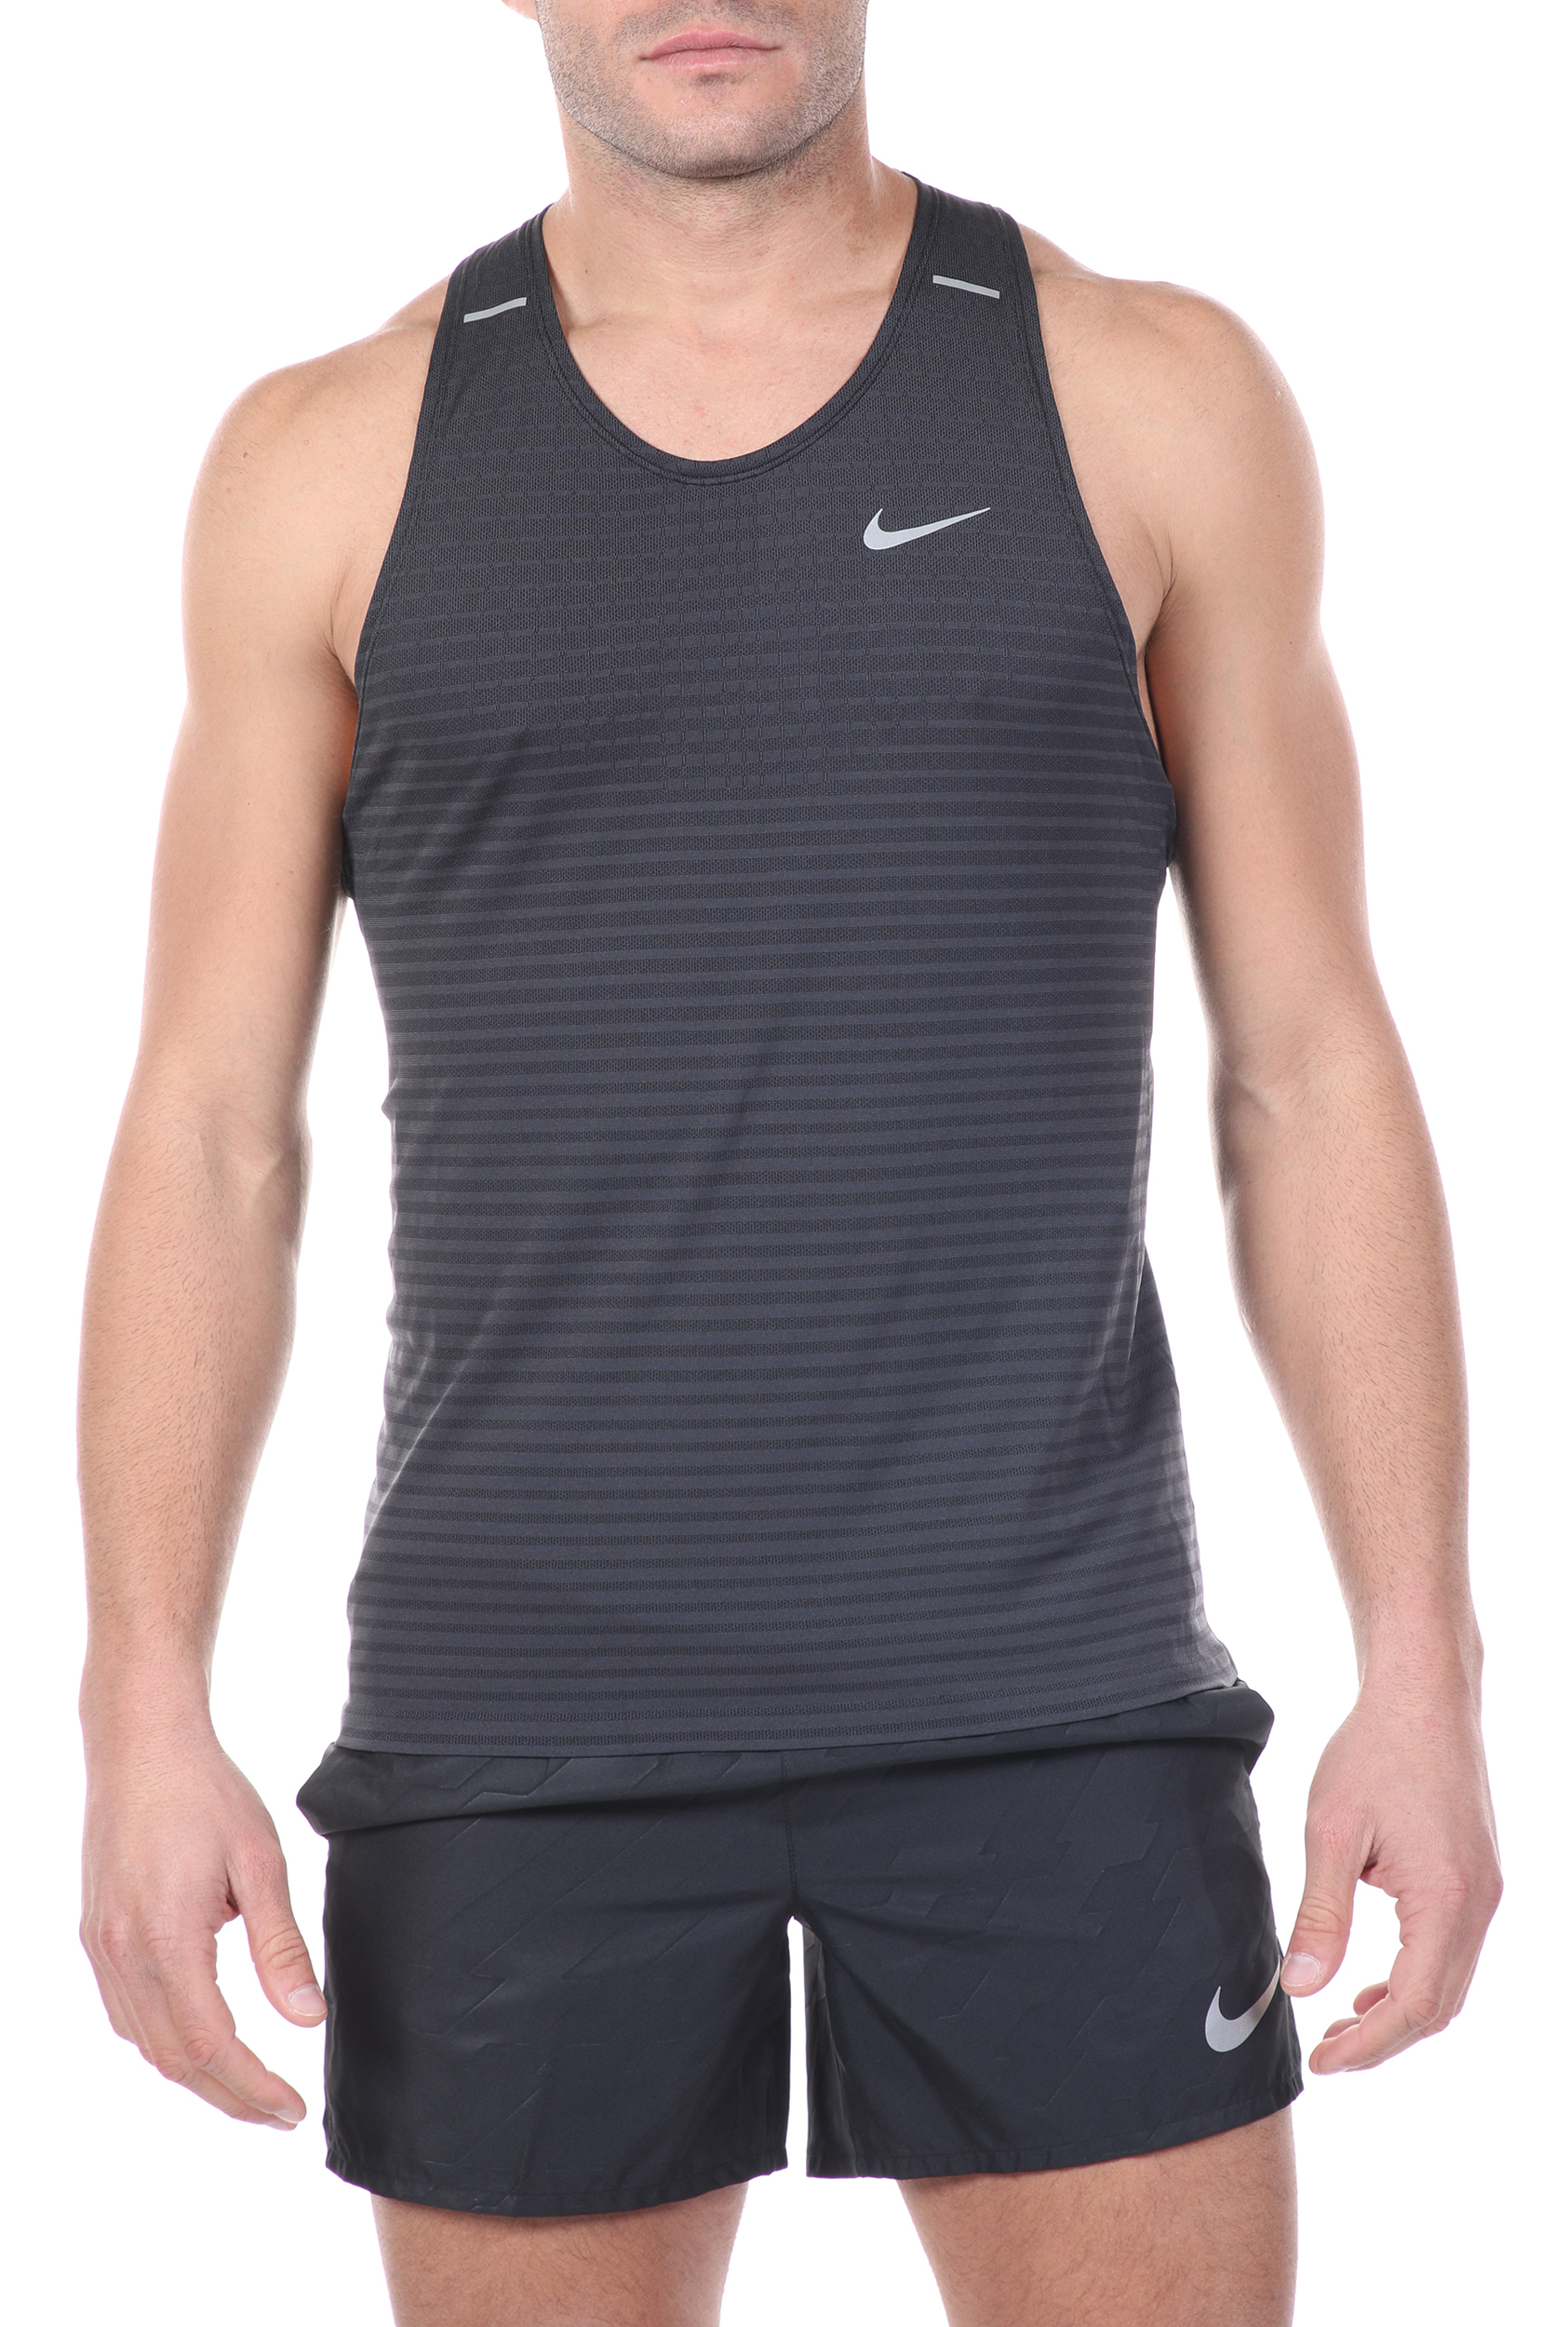 Ανδρικά/Ρούχα/Αθλητικά/T-shirt NIKE - Ανδρική μπλούζα TECHKNIT ULTRA TANK μαύρη